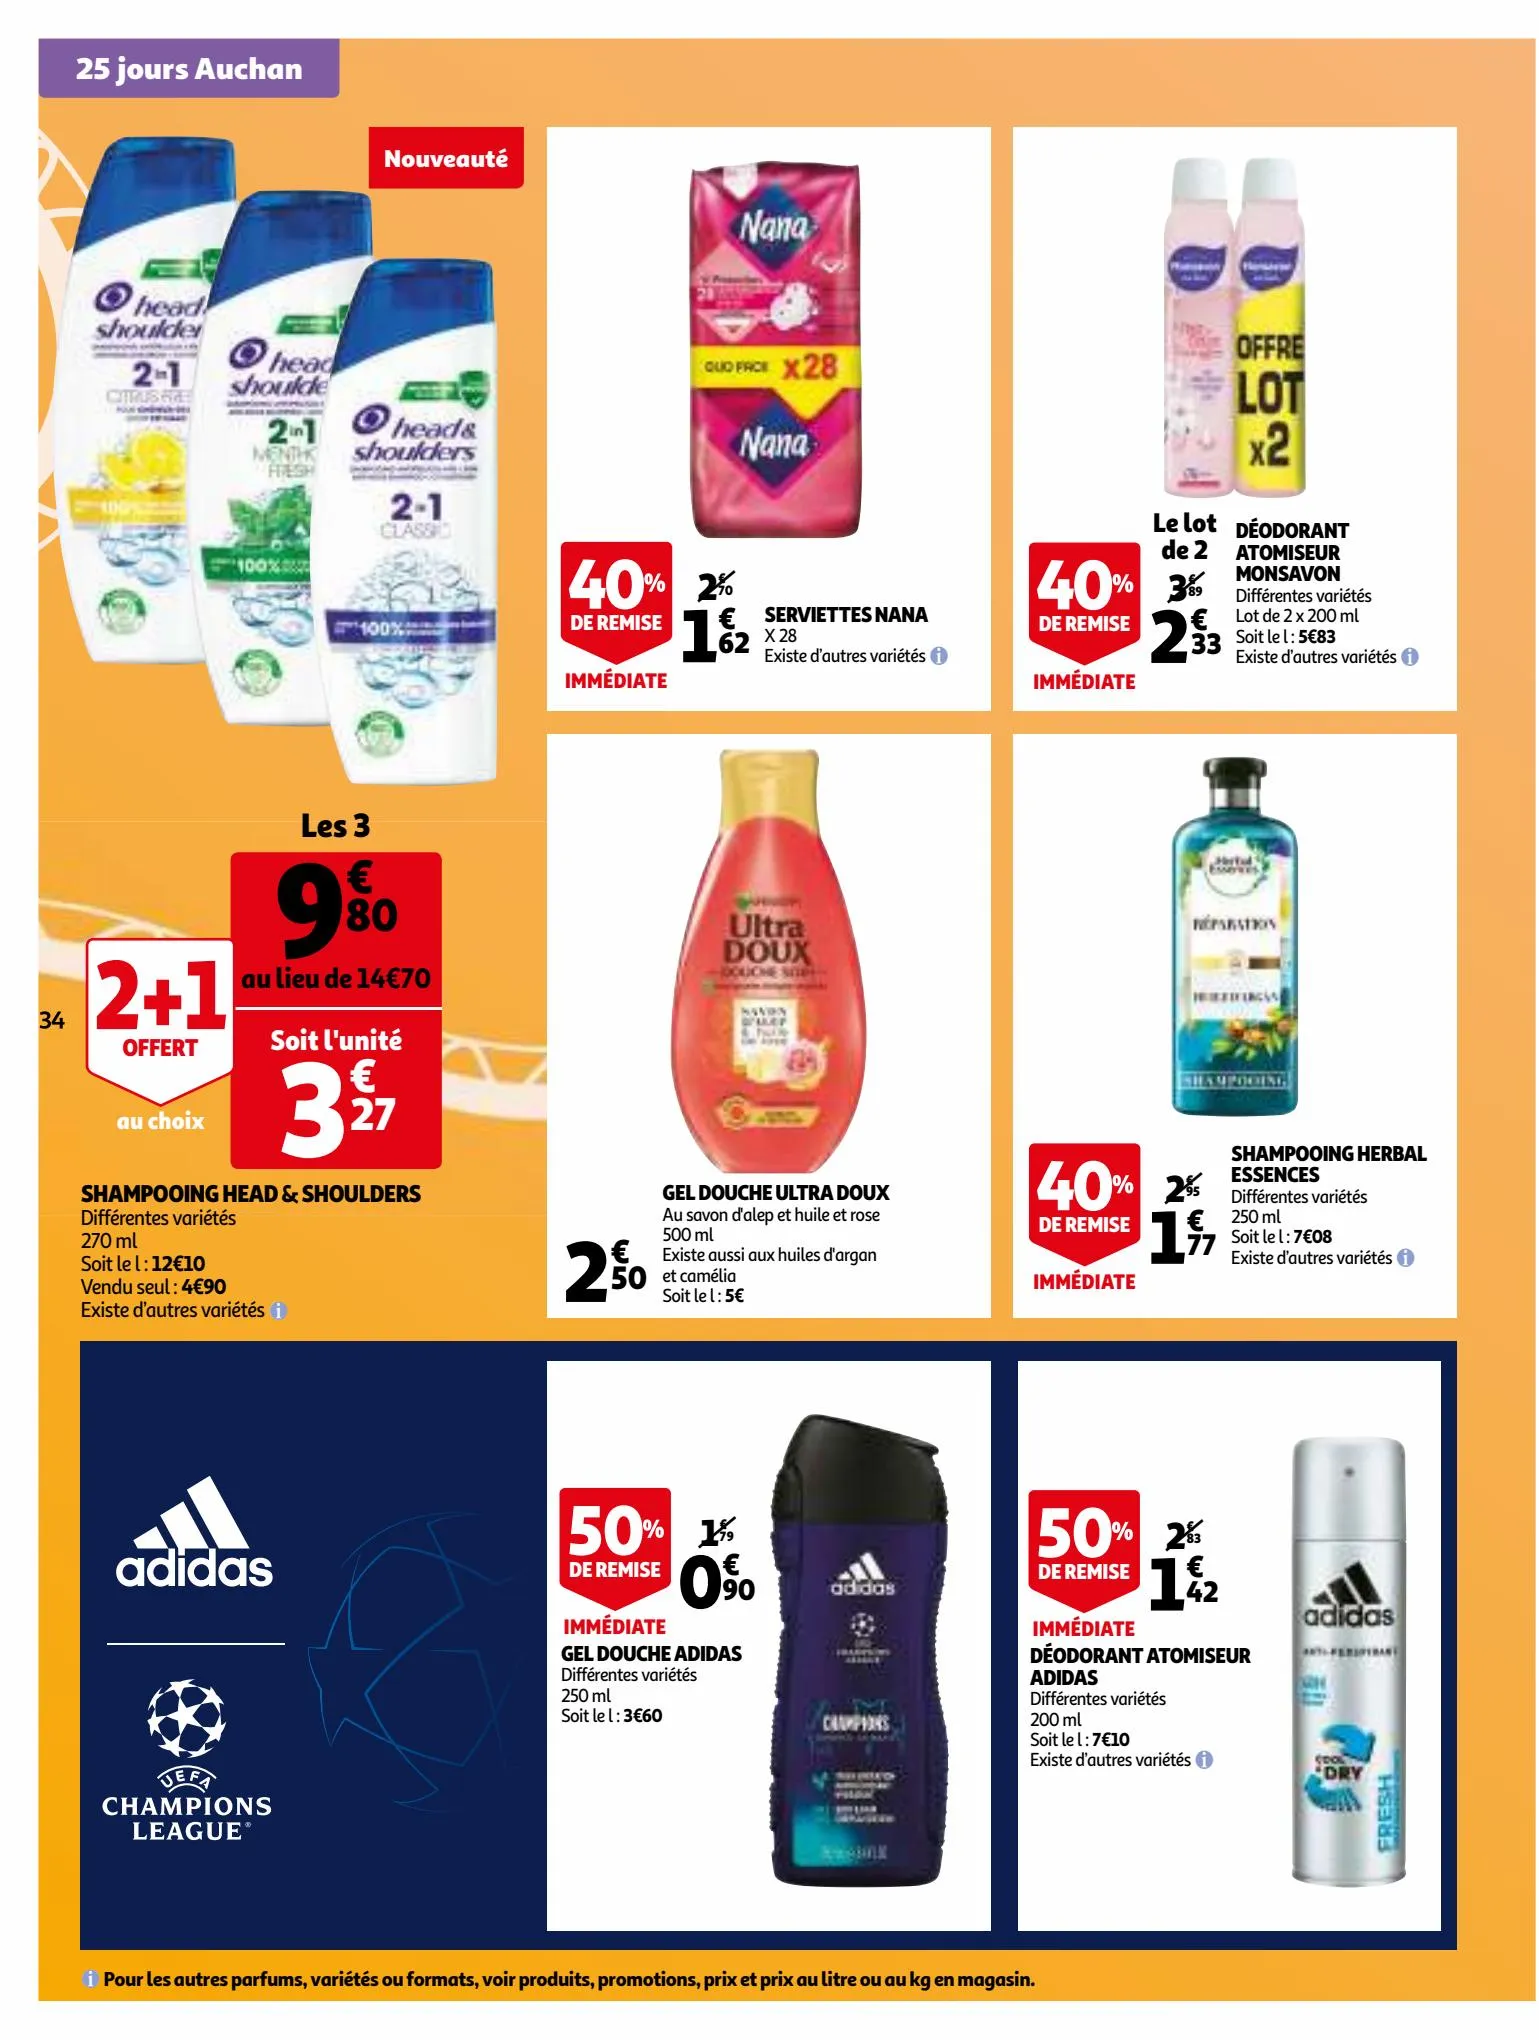 Catalogue 25 jours Auchan, page 00034